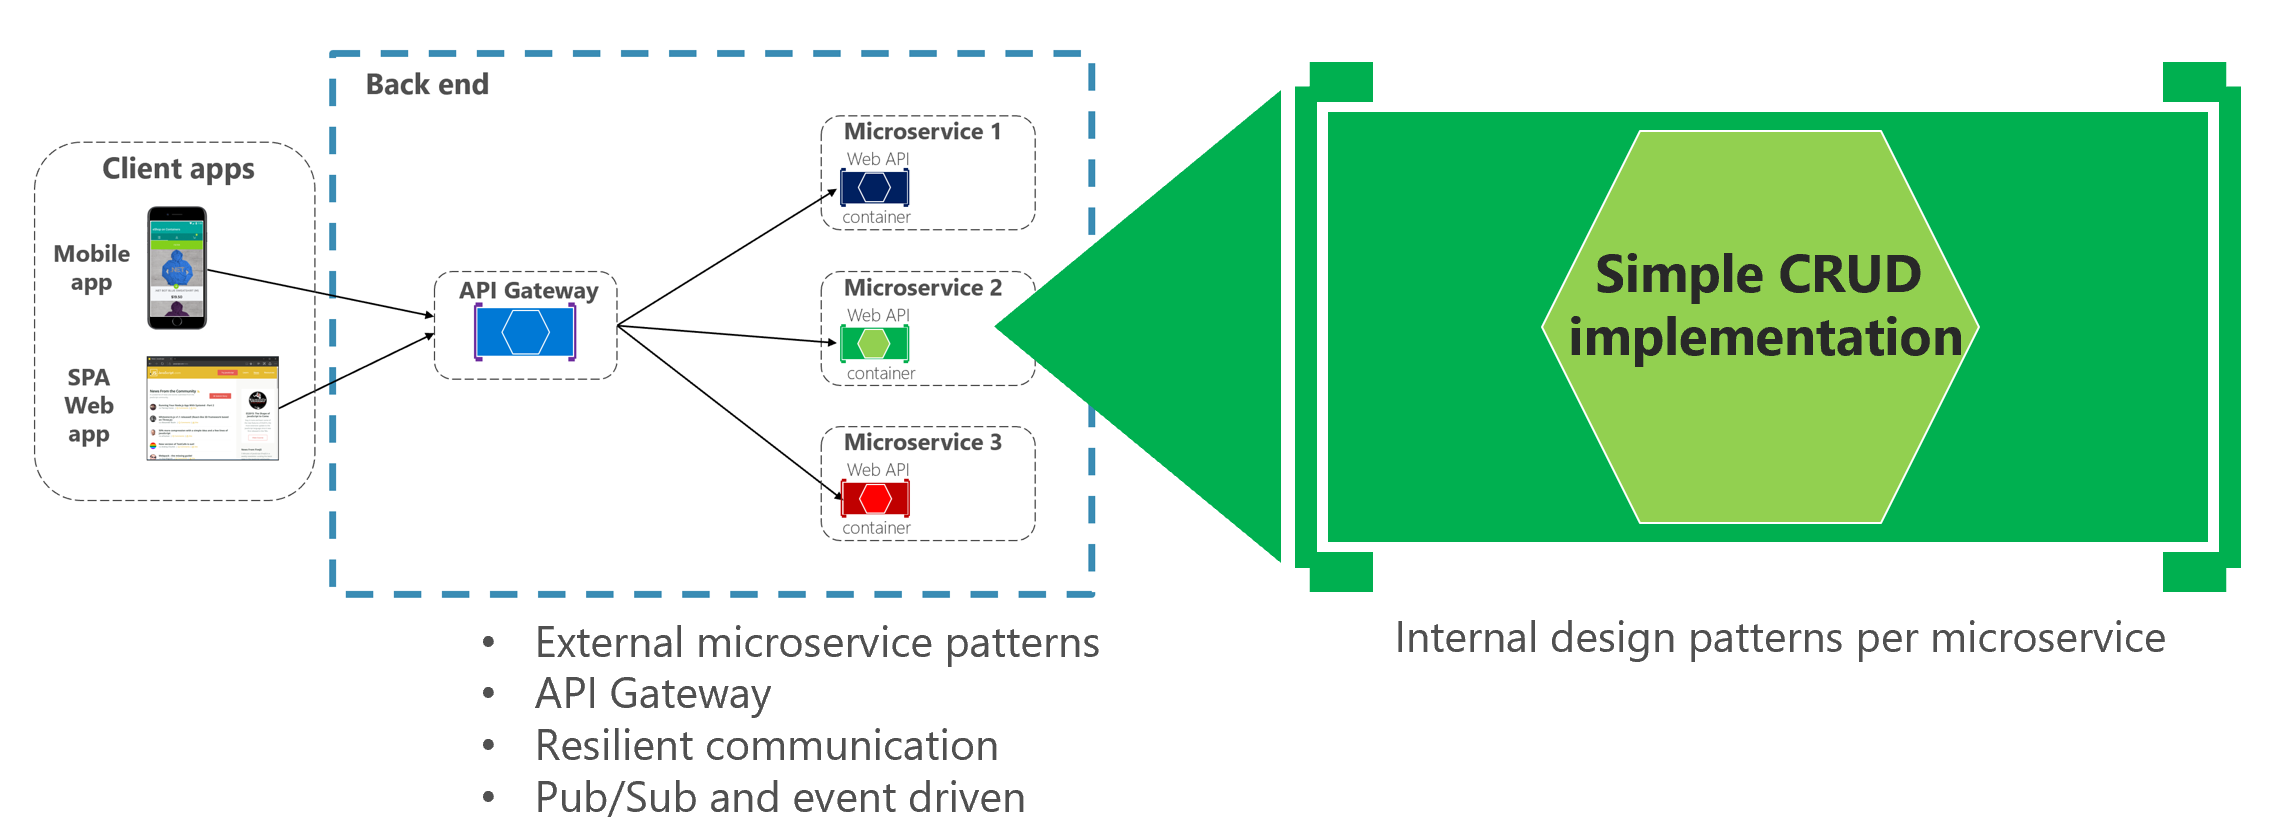 Diagramme montrant un modèle de conception interne de microservices CRUD simples.